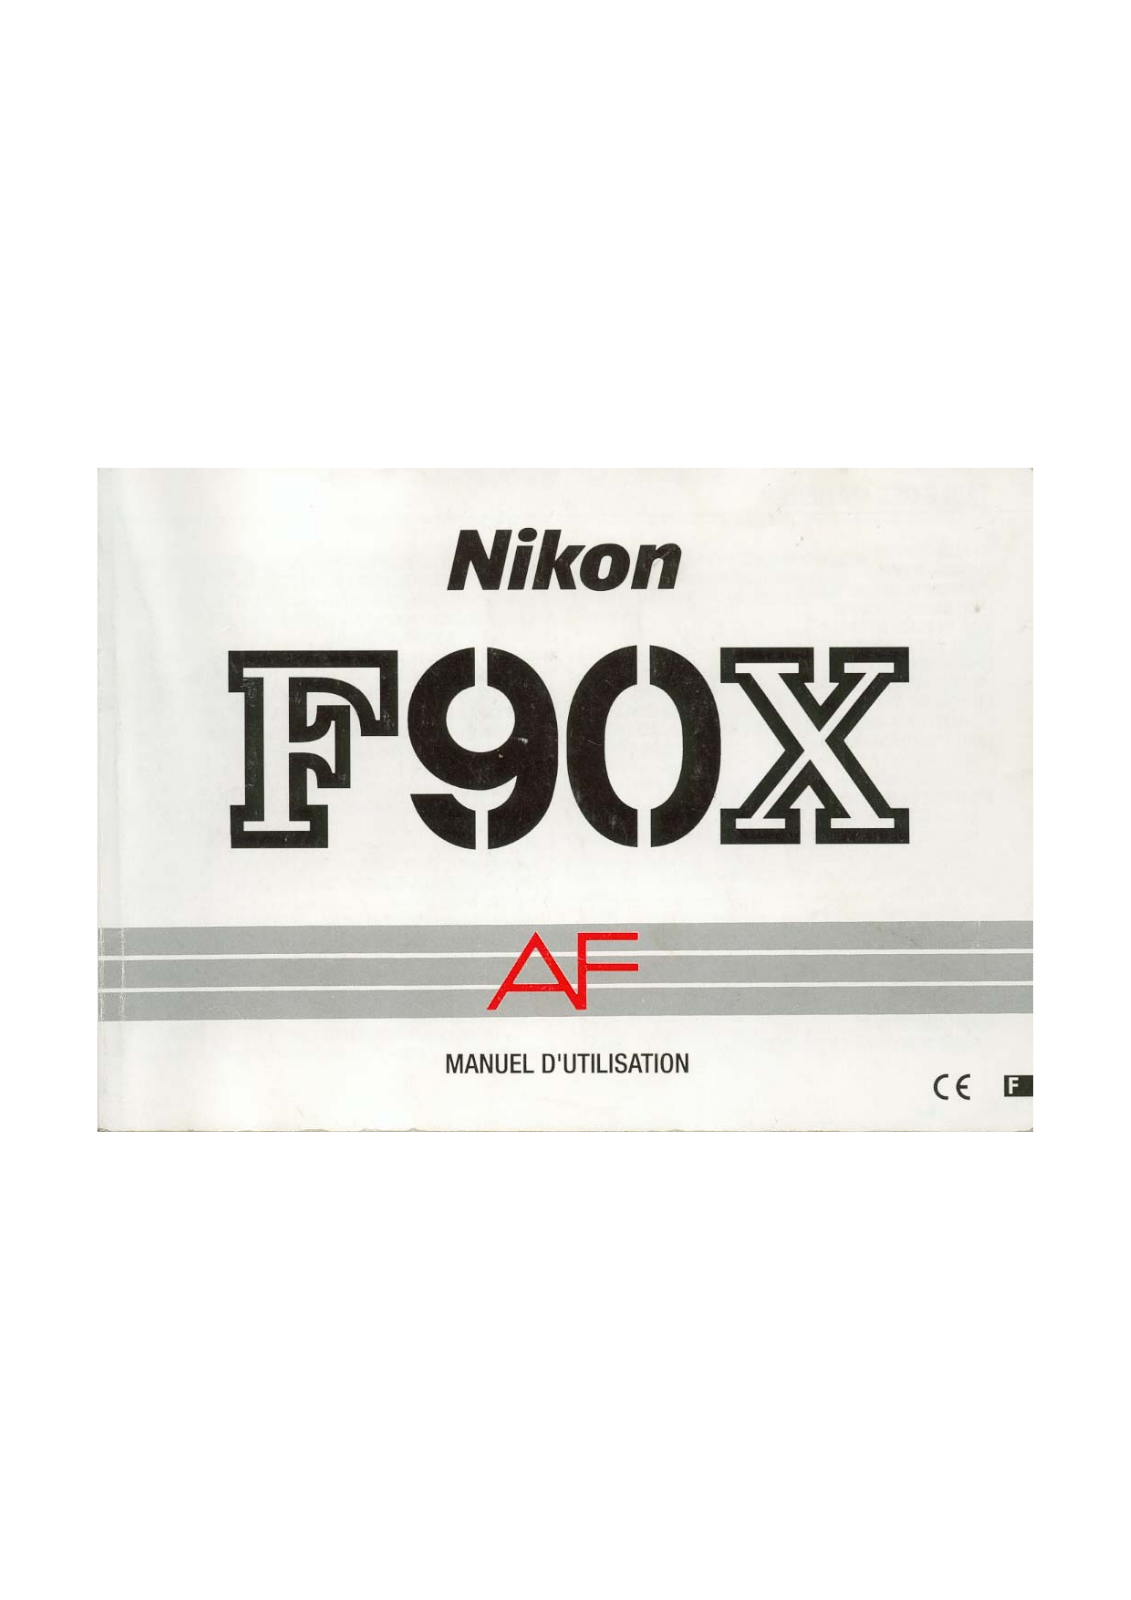 NIKON F90X User Manual